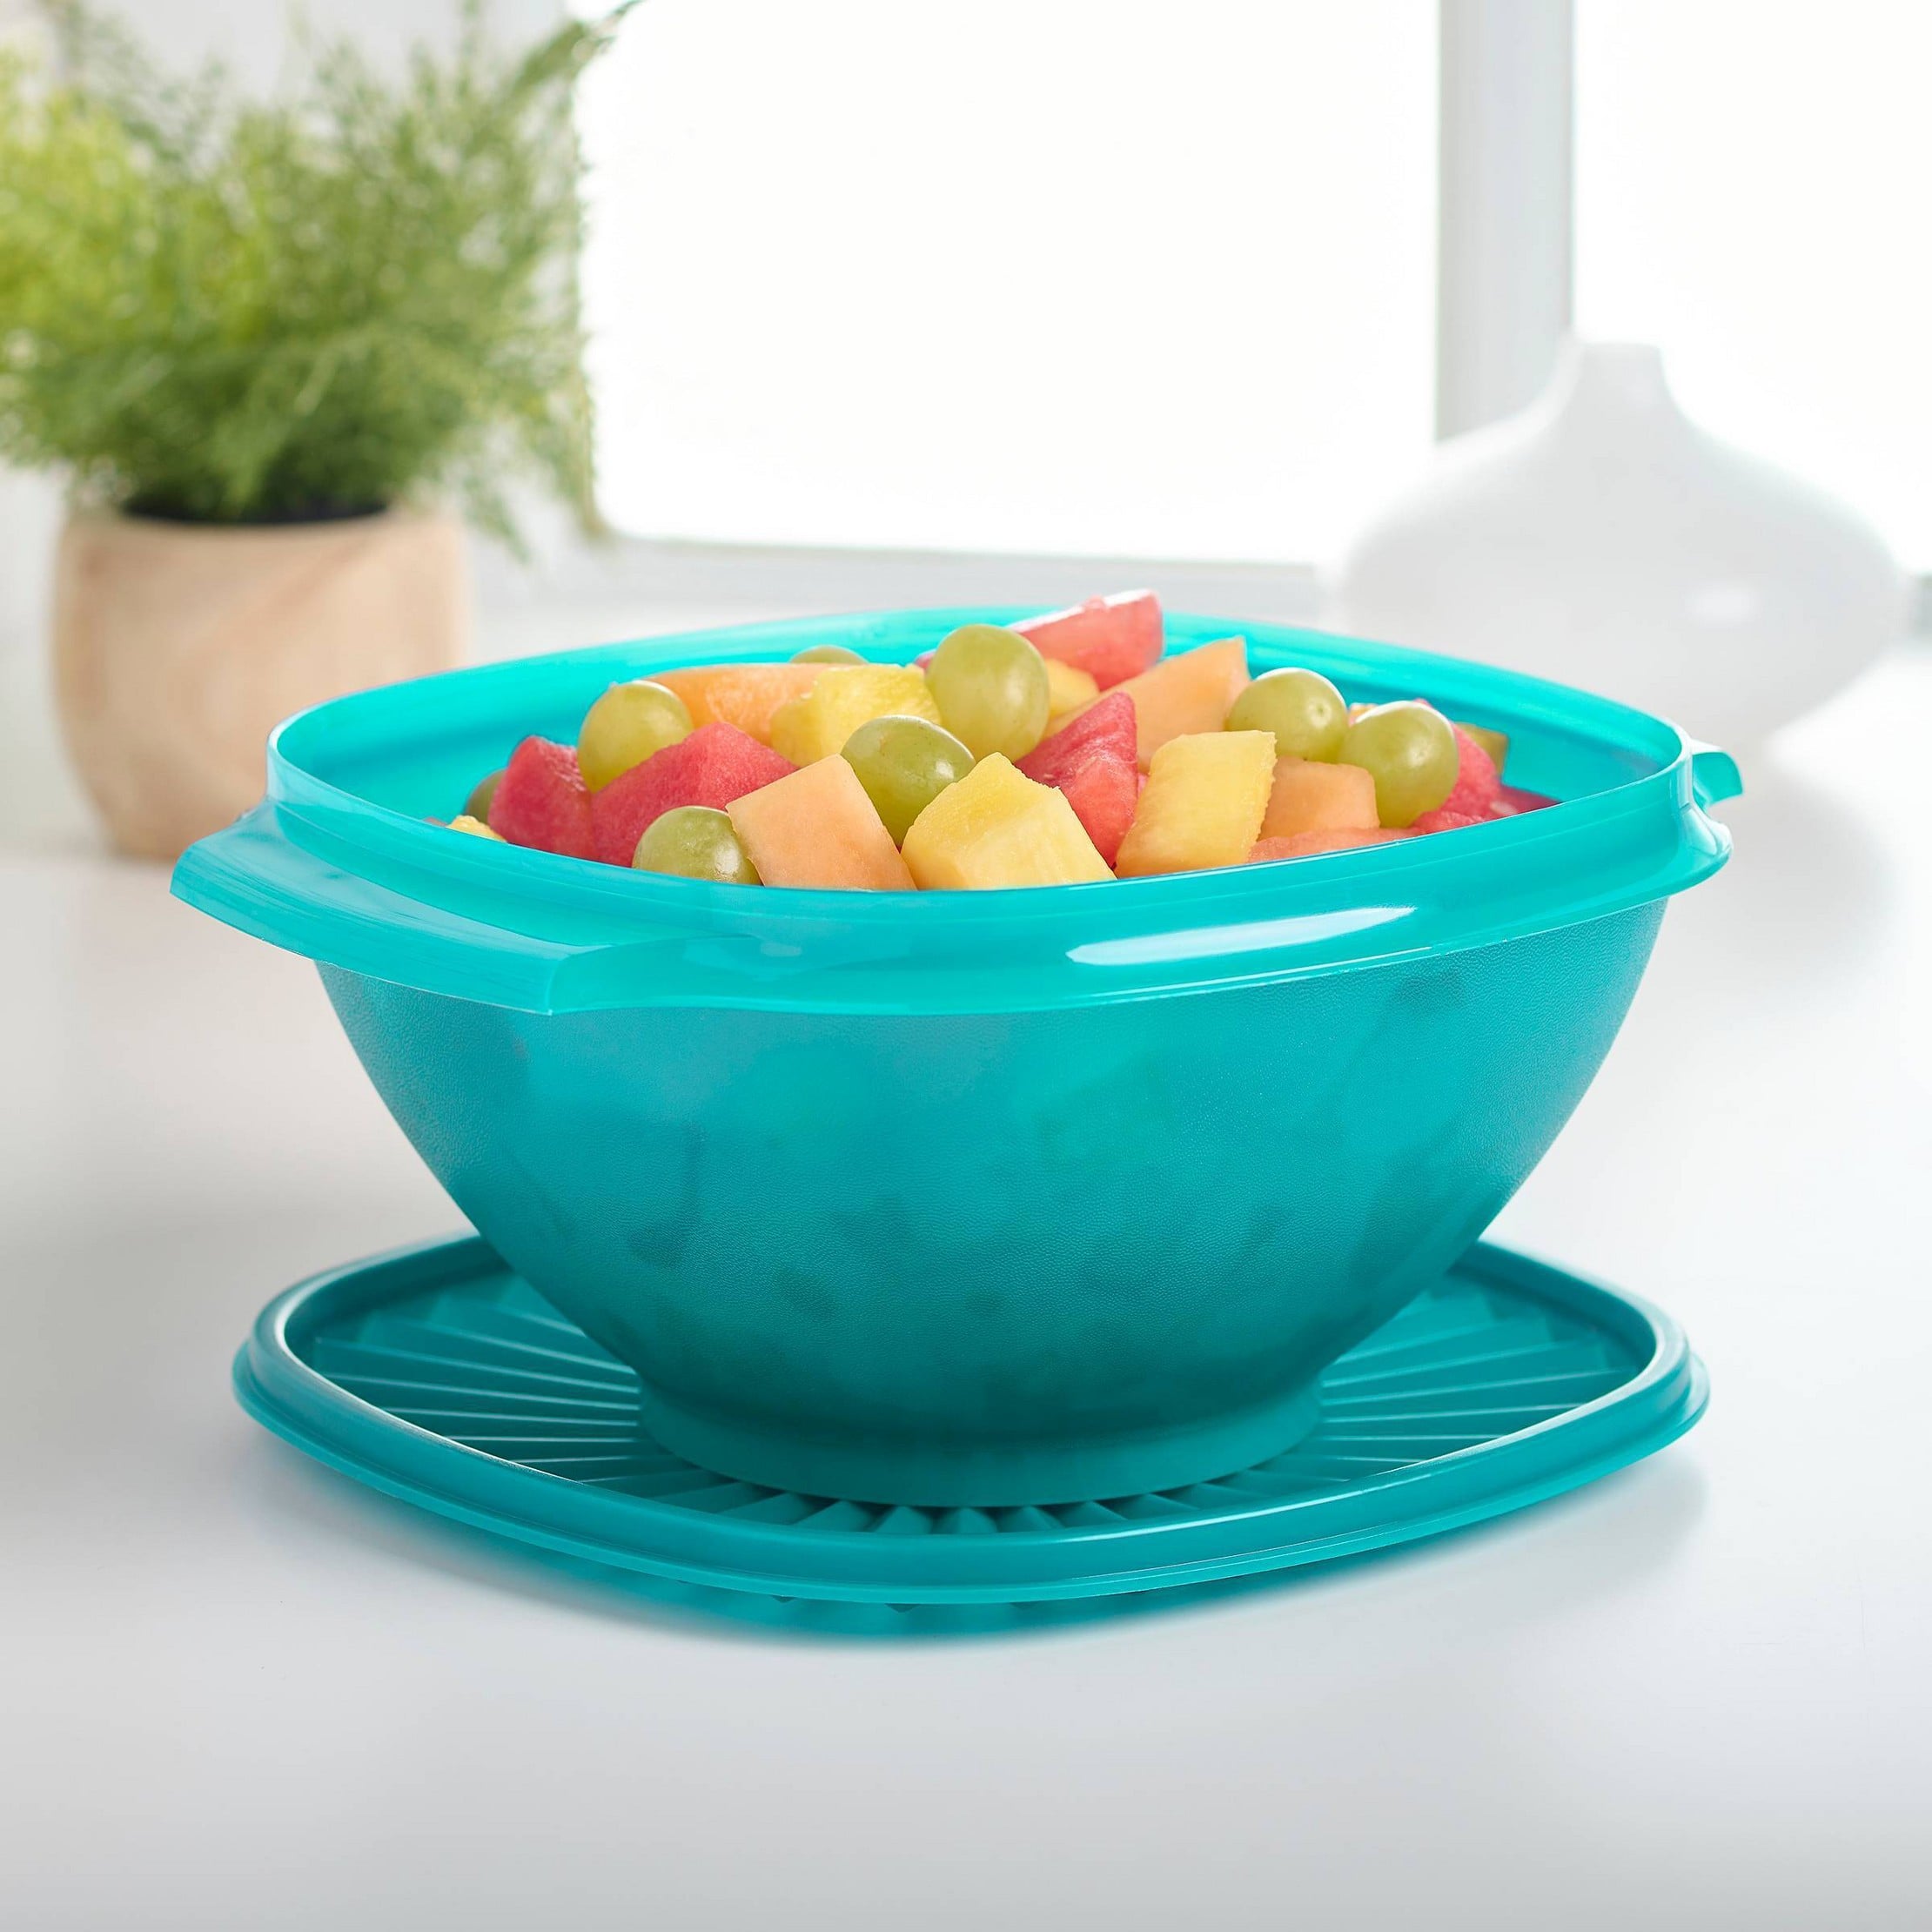 Tupperware 3pc Wonderlier Plastic Food Storage Bowls Red : Target